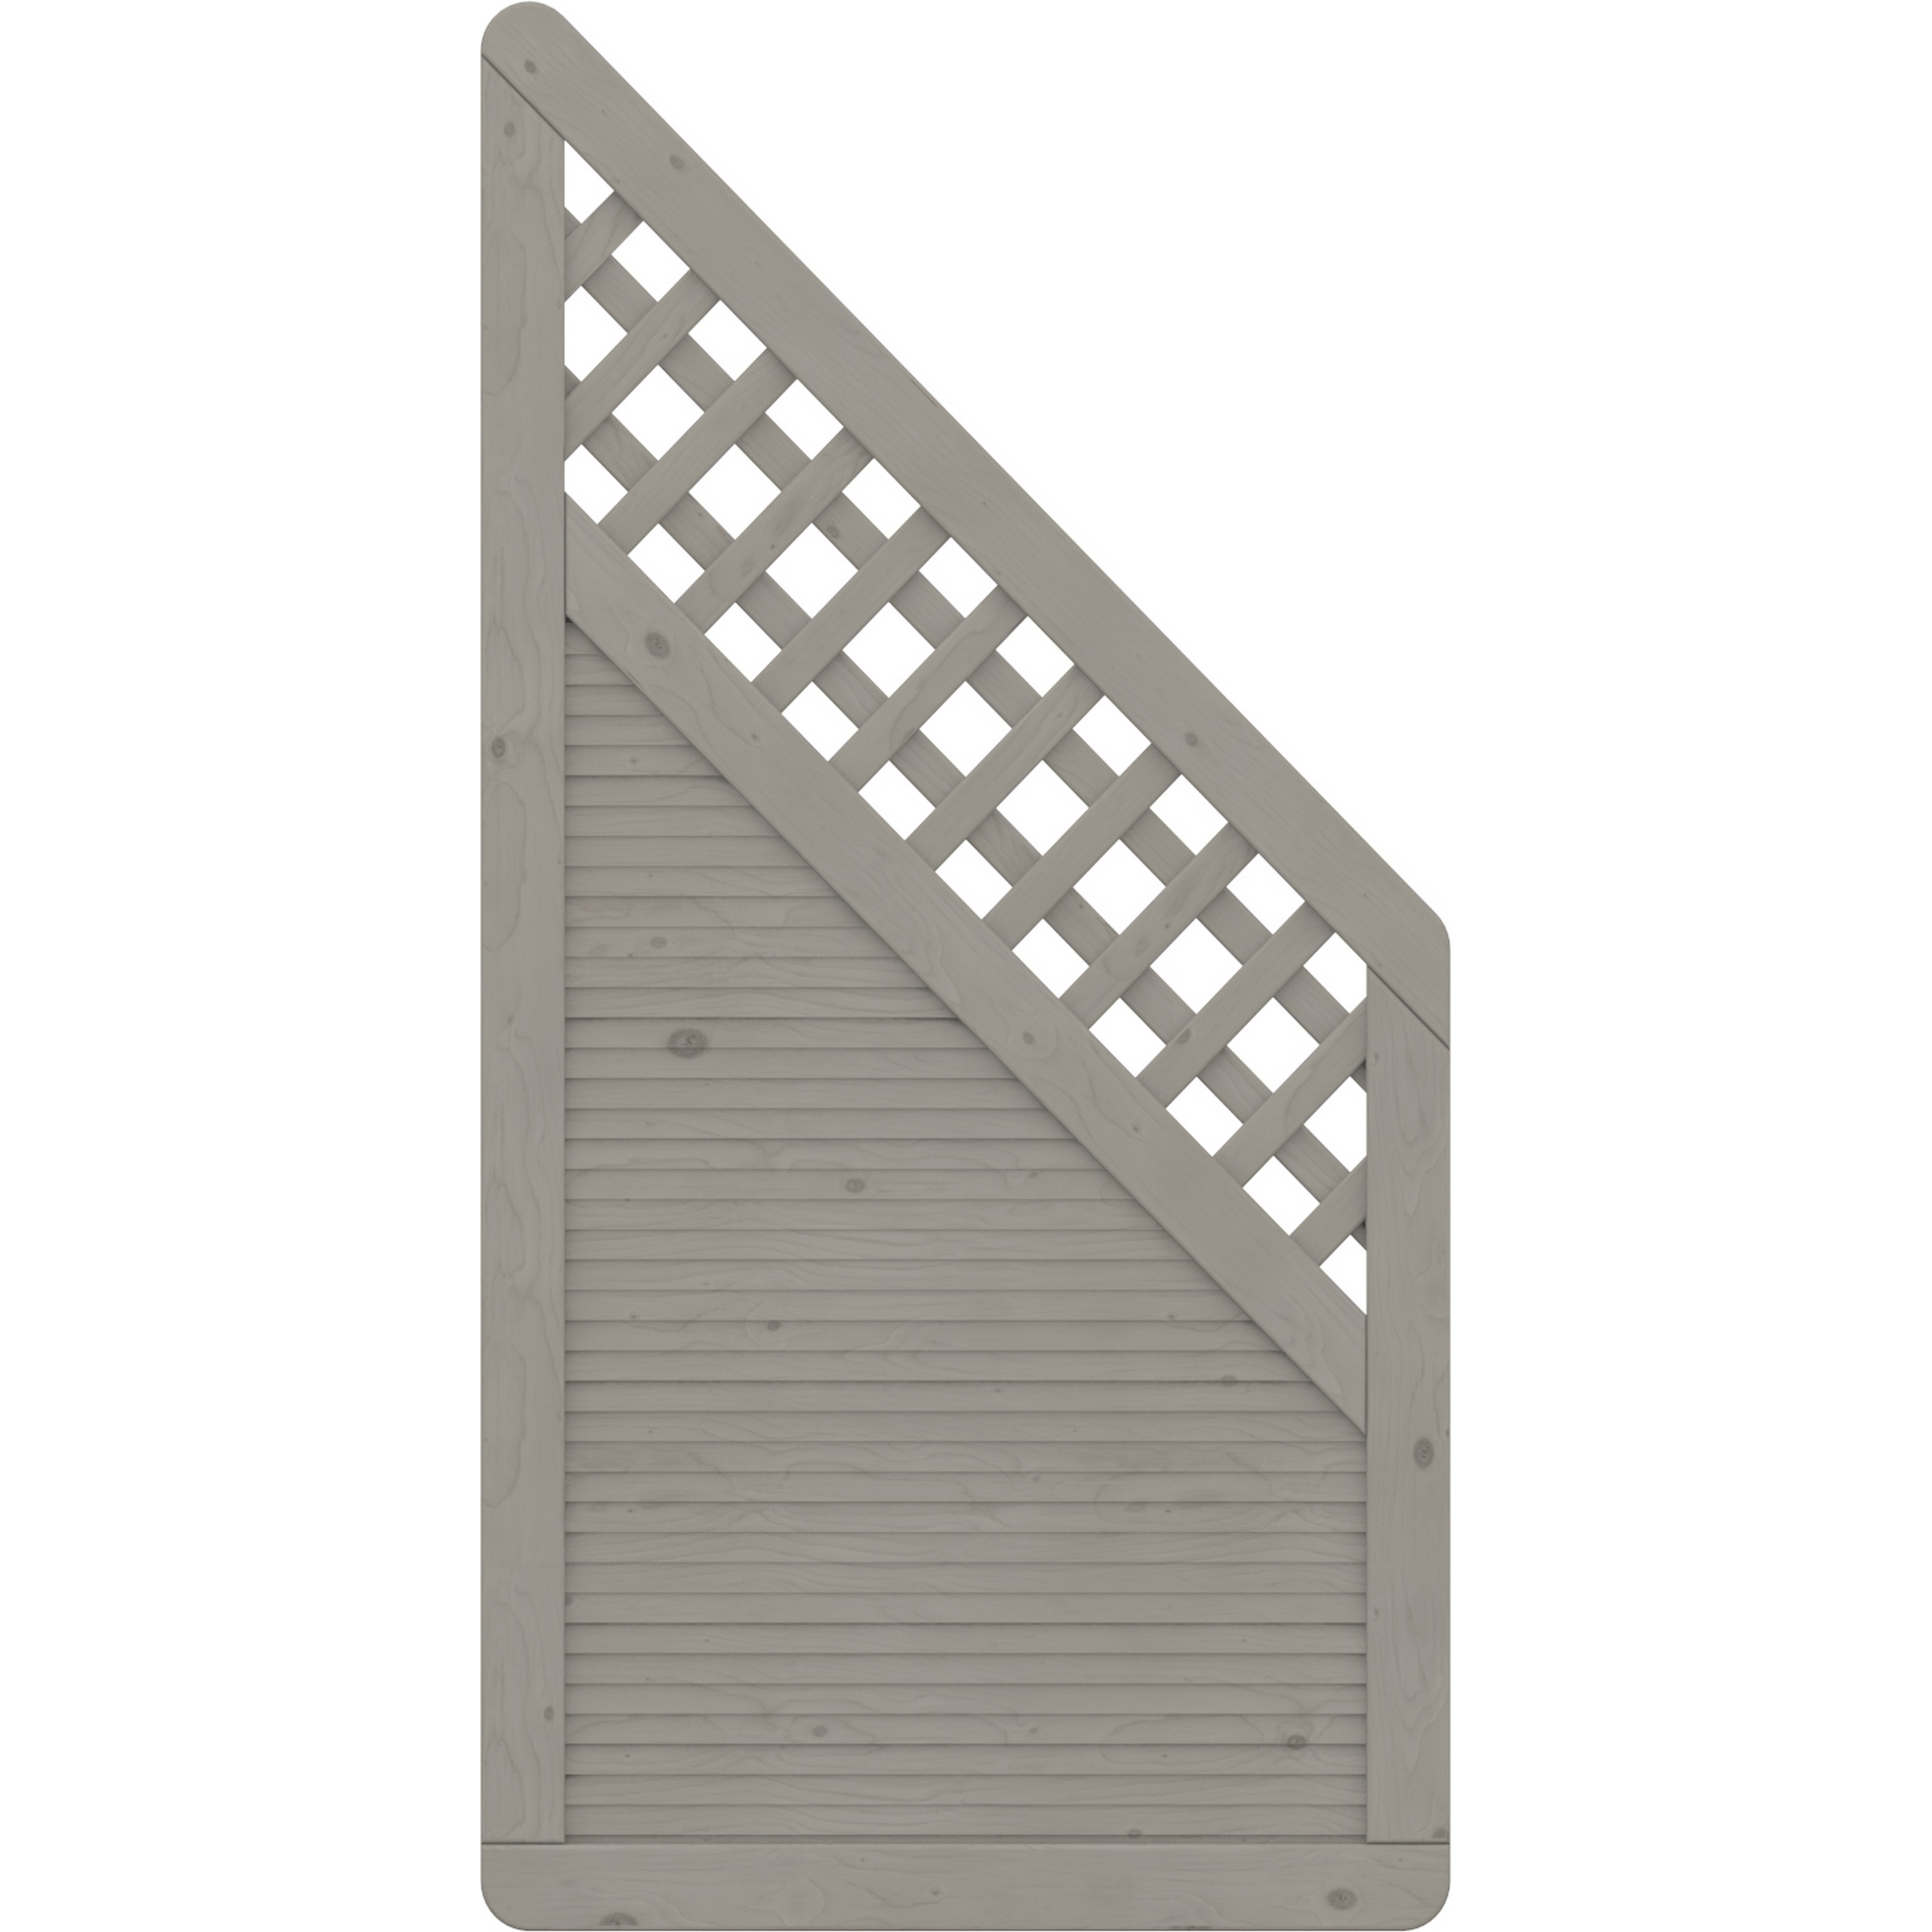 Zaunelement 'Arzago' mit Gitter grau 90 x 179 auf 90 cm + product picture